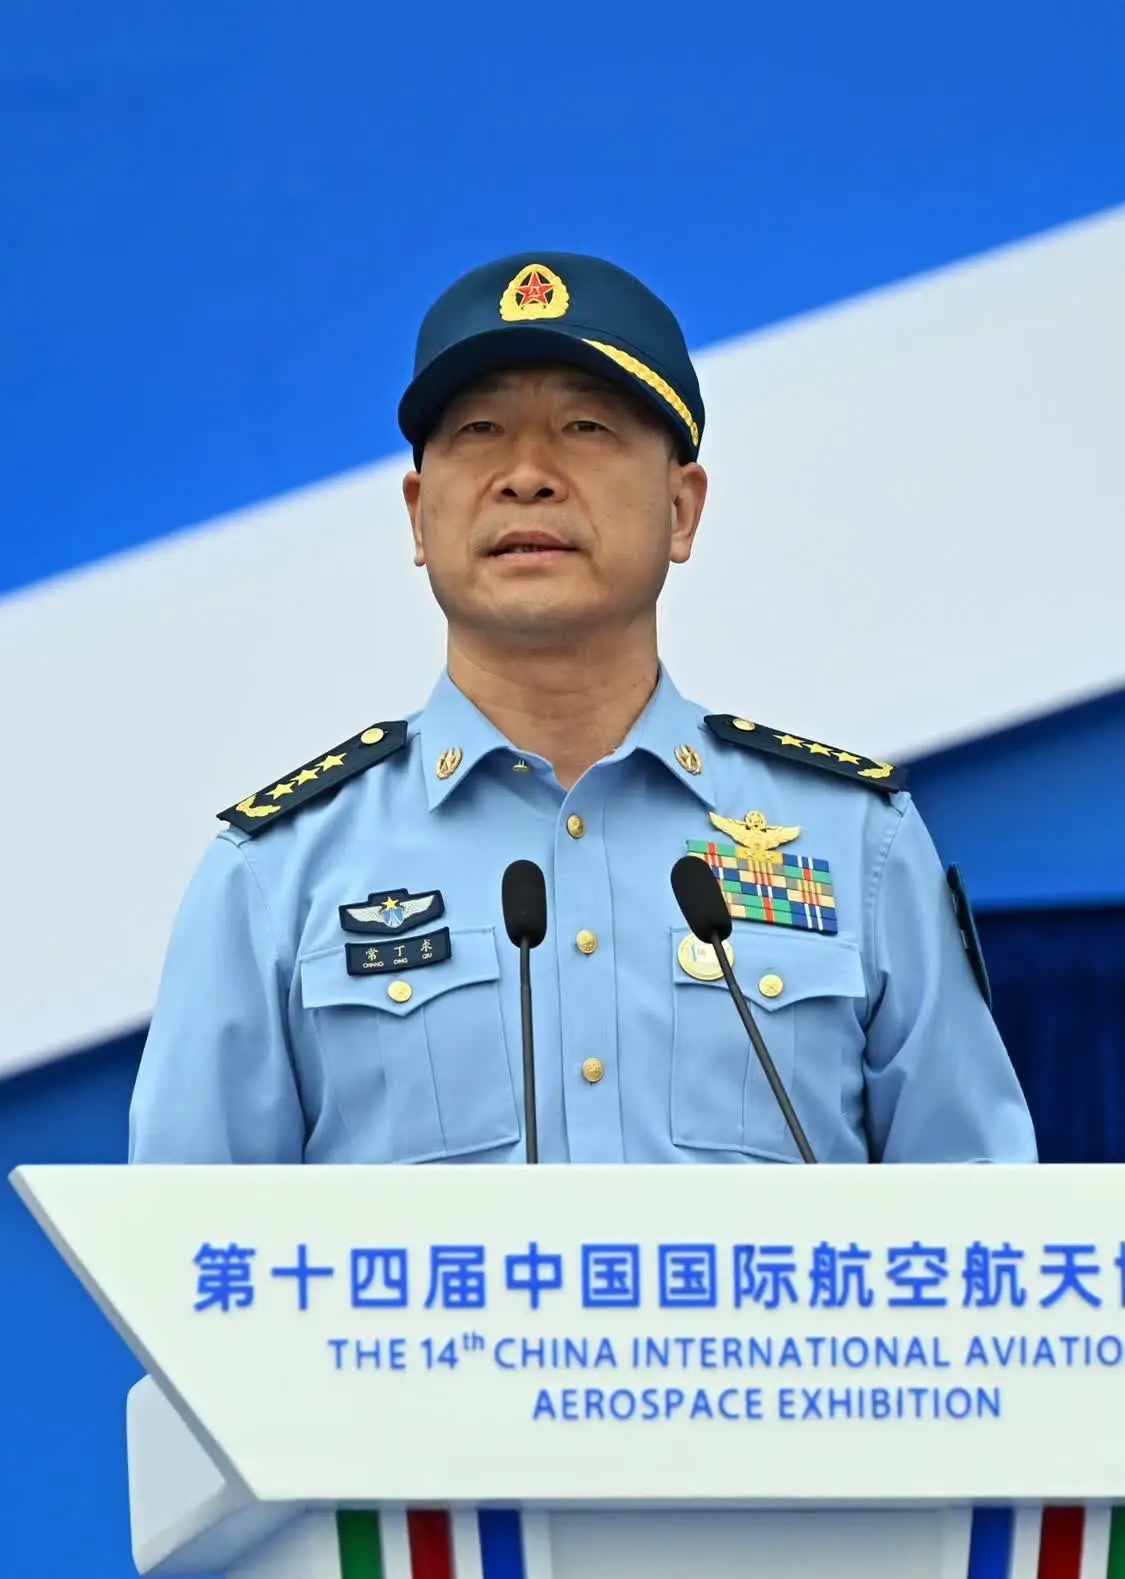 中国空军司令员常定秋:珠海见证了空军的转型。